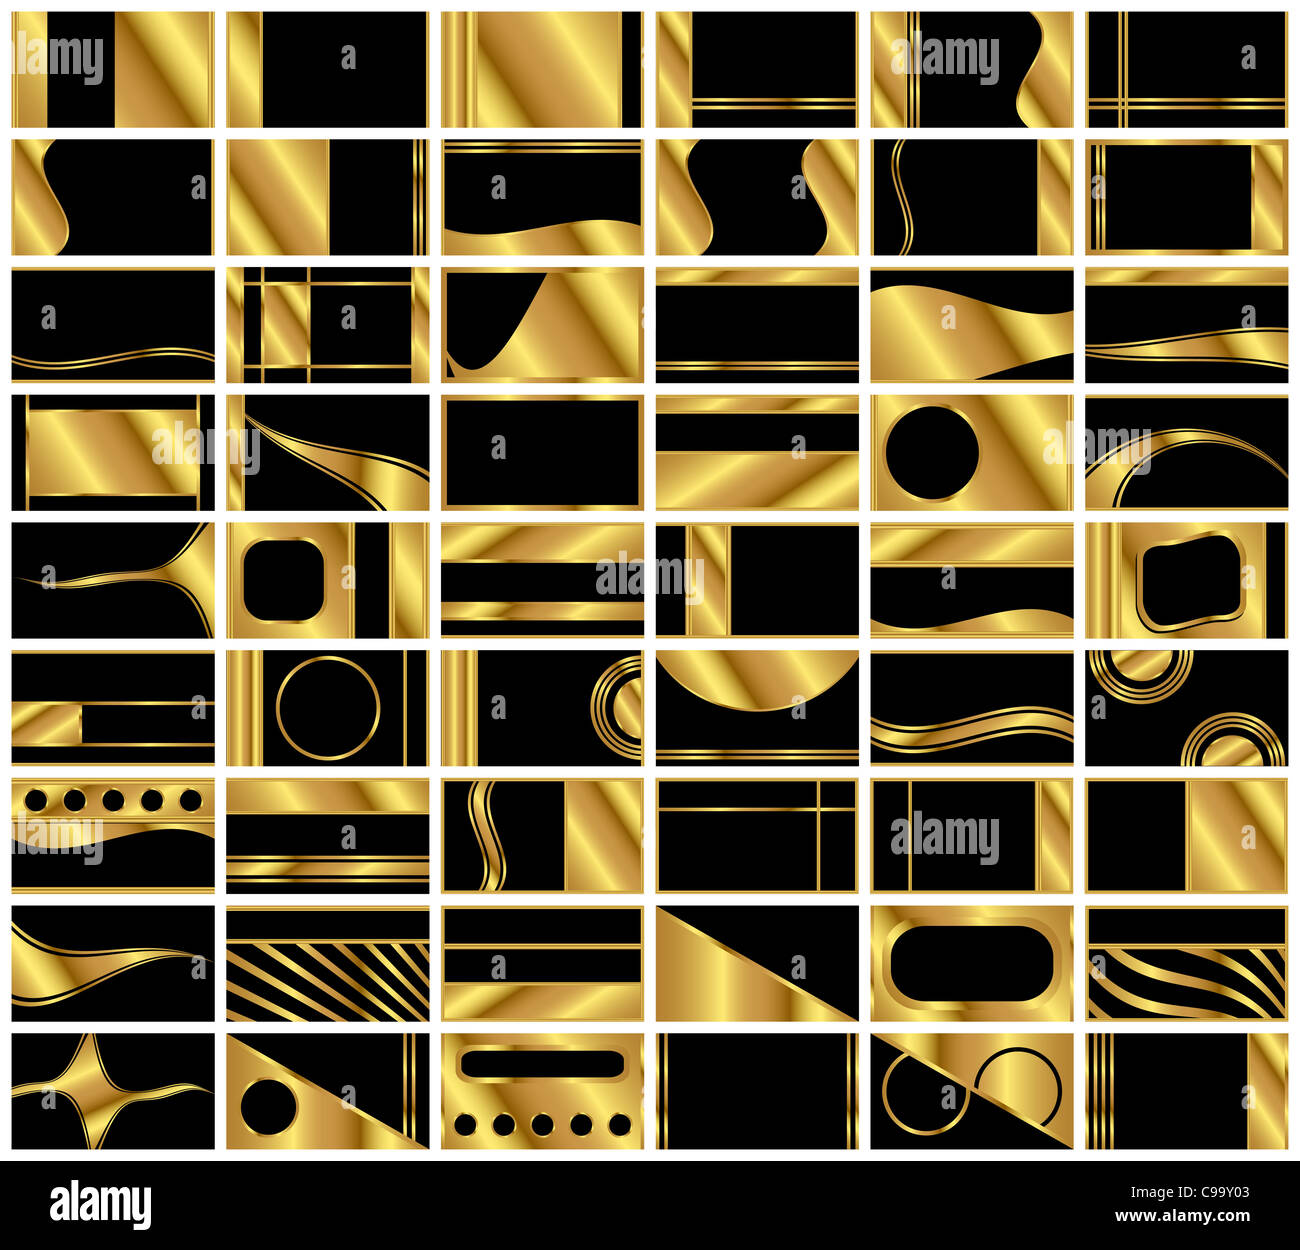 Eine große Sammlung von vierundfünfzig elegant, gold und schwarz Exekutive Stil Hintergrund Visitenkartenvorlagen. Stockfoto